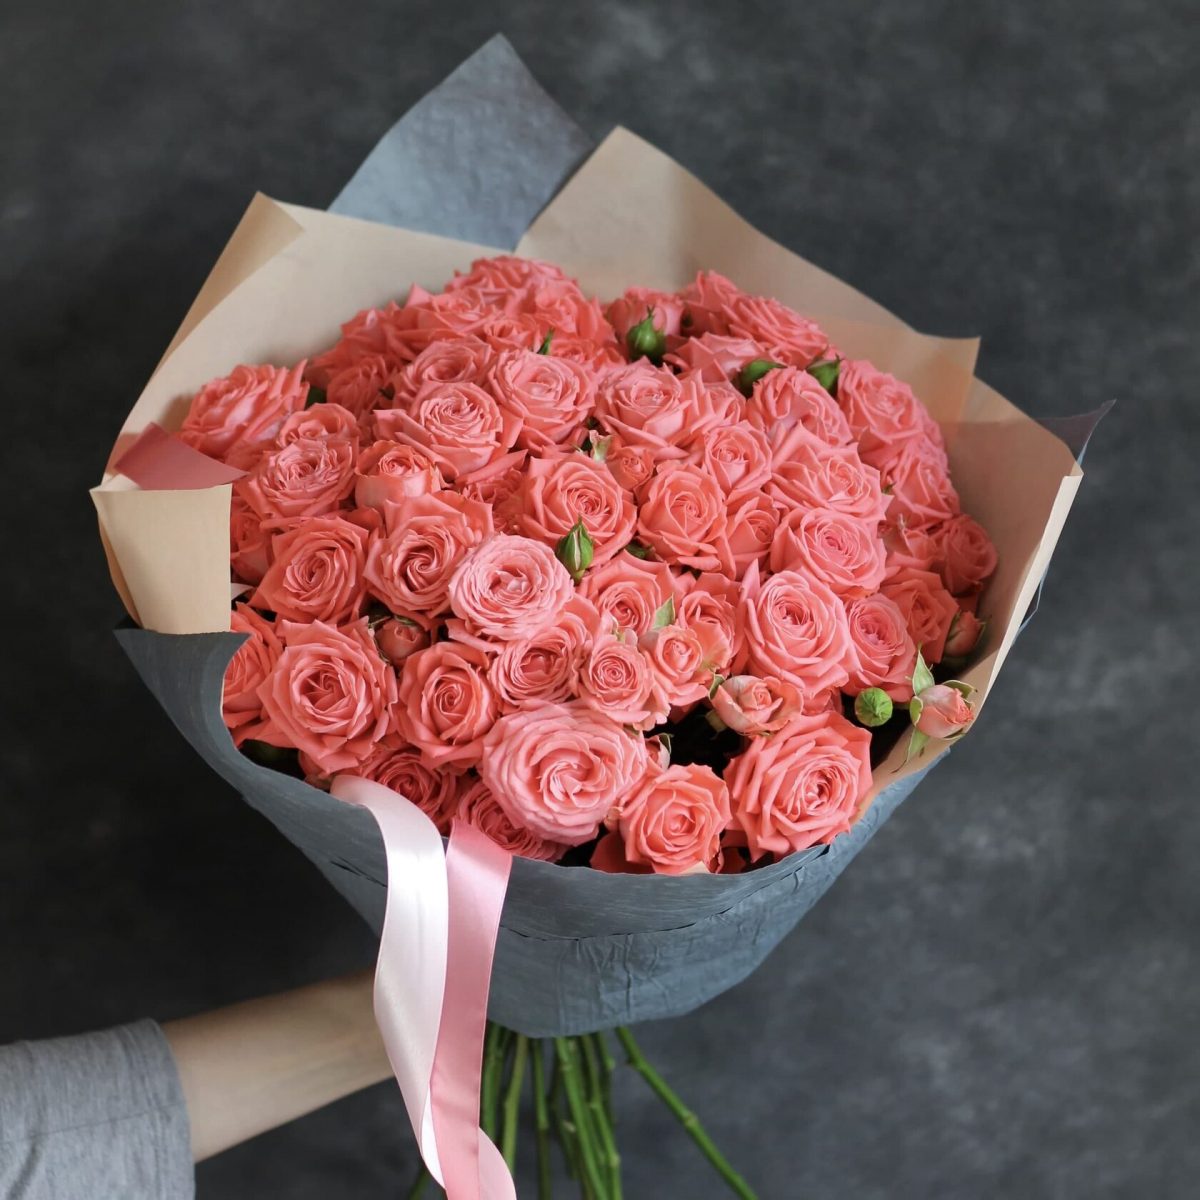 Купить букет из 20 розовых кустовых роз по доступной цене с доставкой вМоскве и области в интернет-магазине Город Букетов